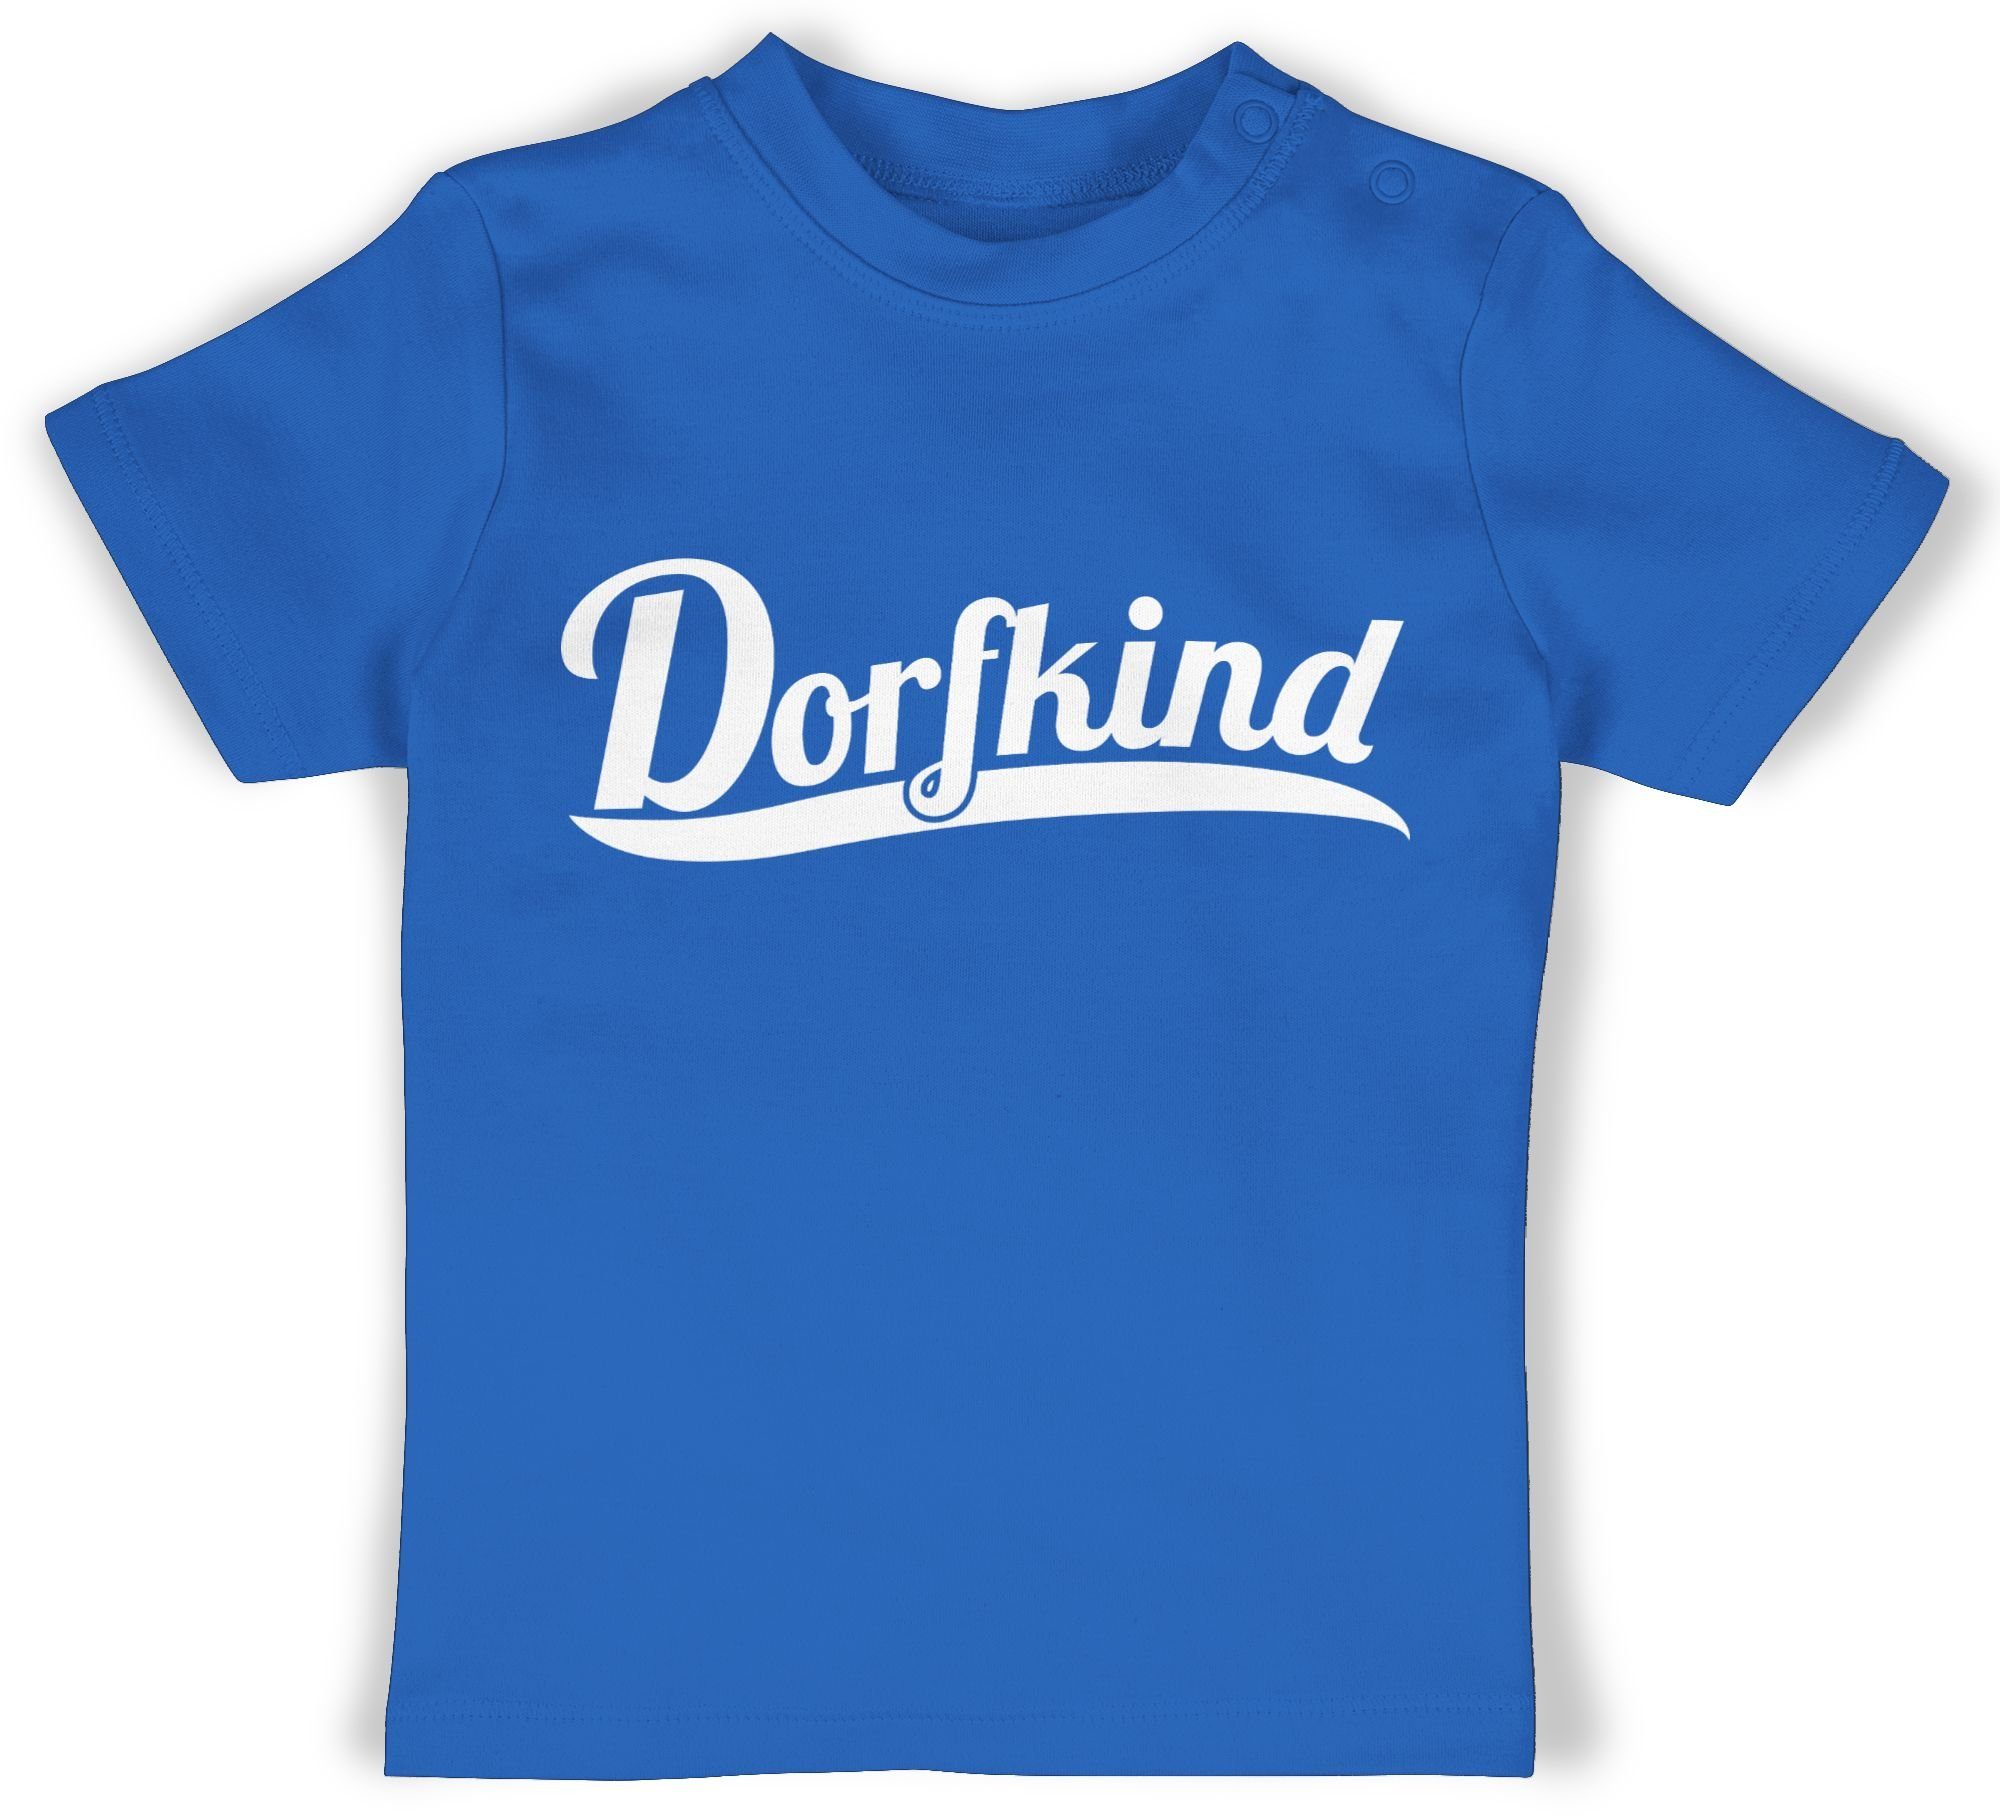 1 Dorfkind Shirtracer Sprüche Weiss T-Shirt Baby Royalblau